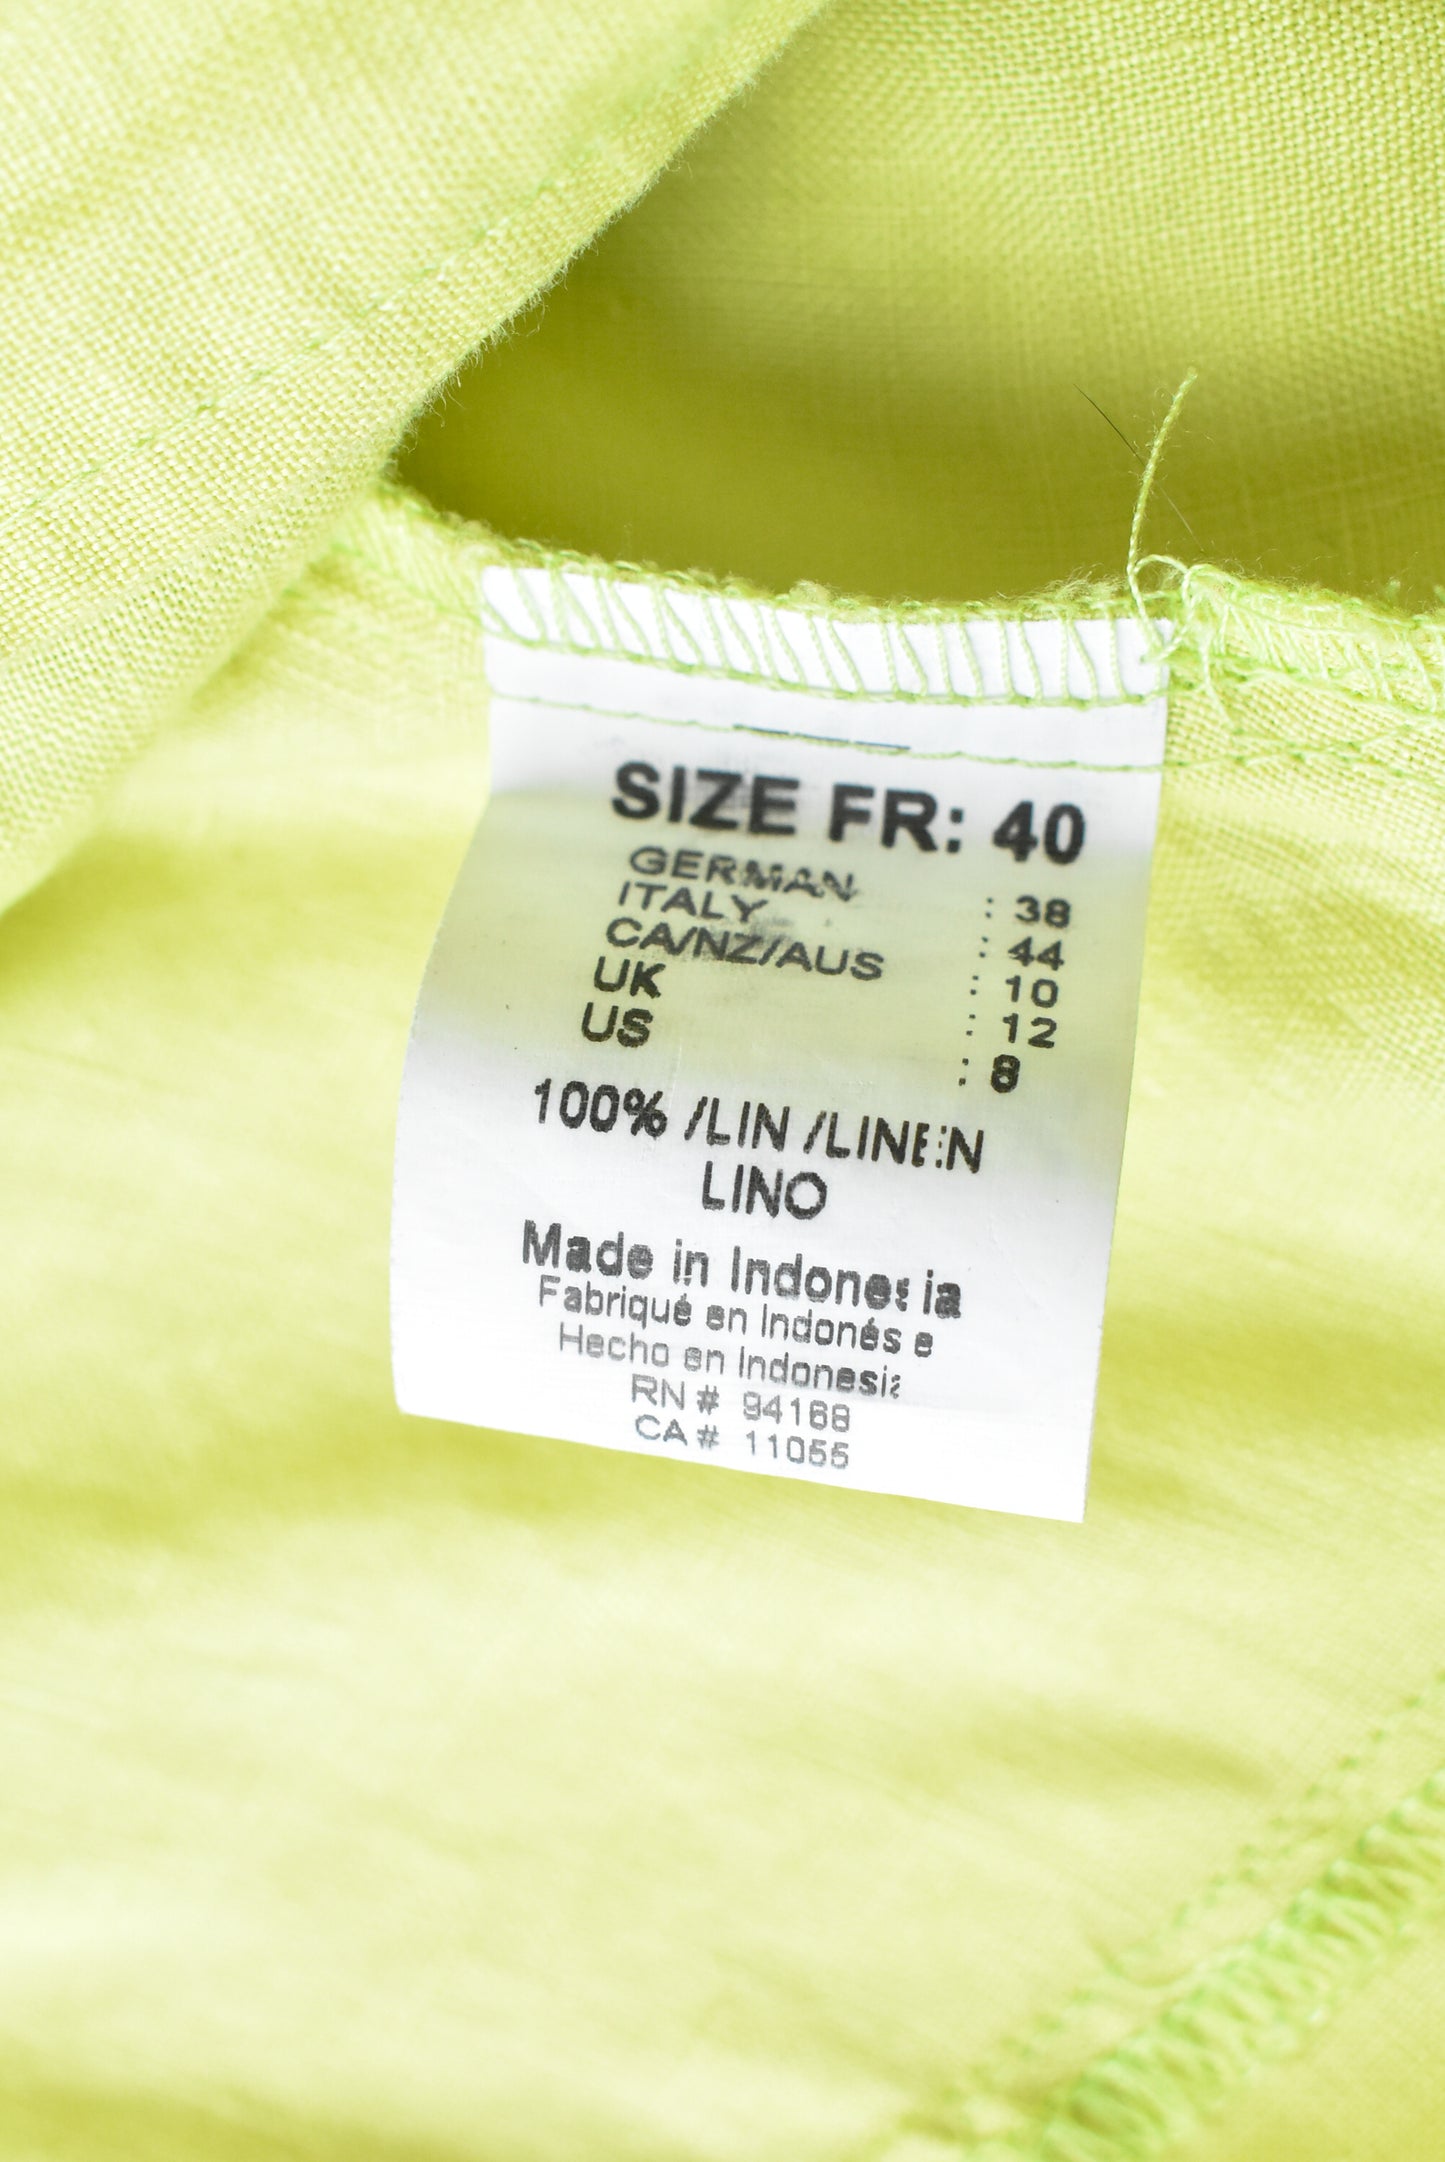 Lime green linen vest, size M